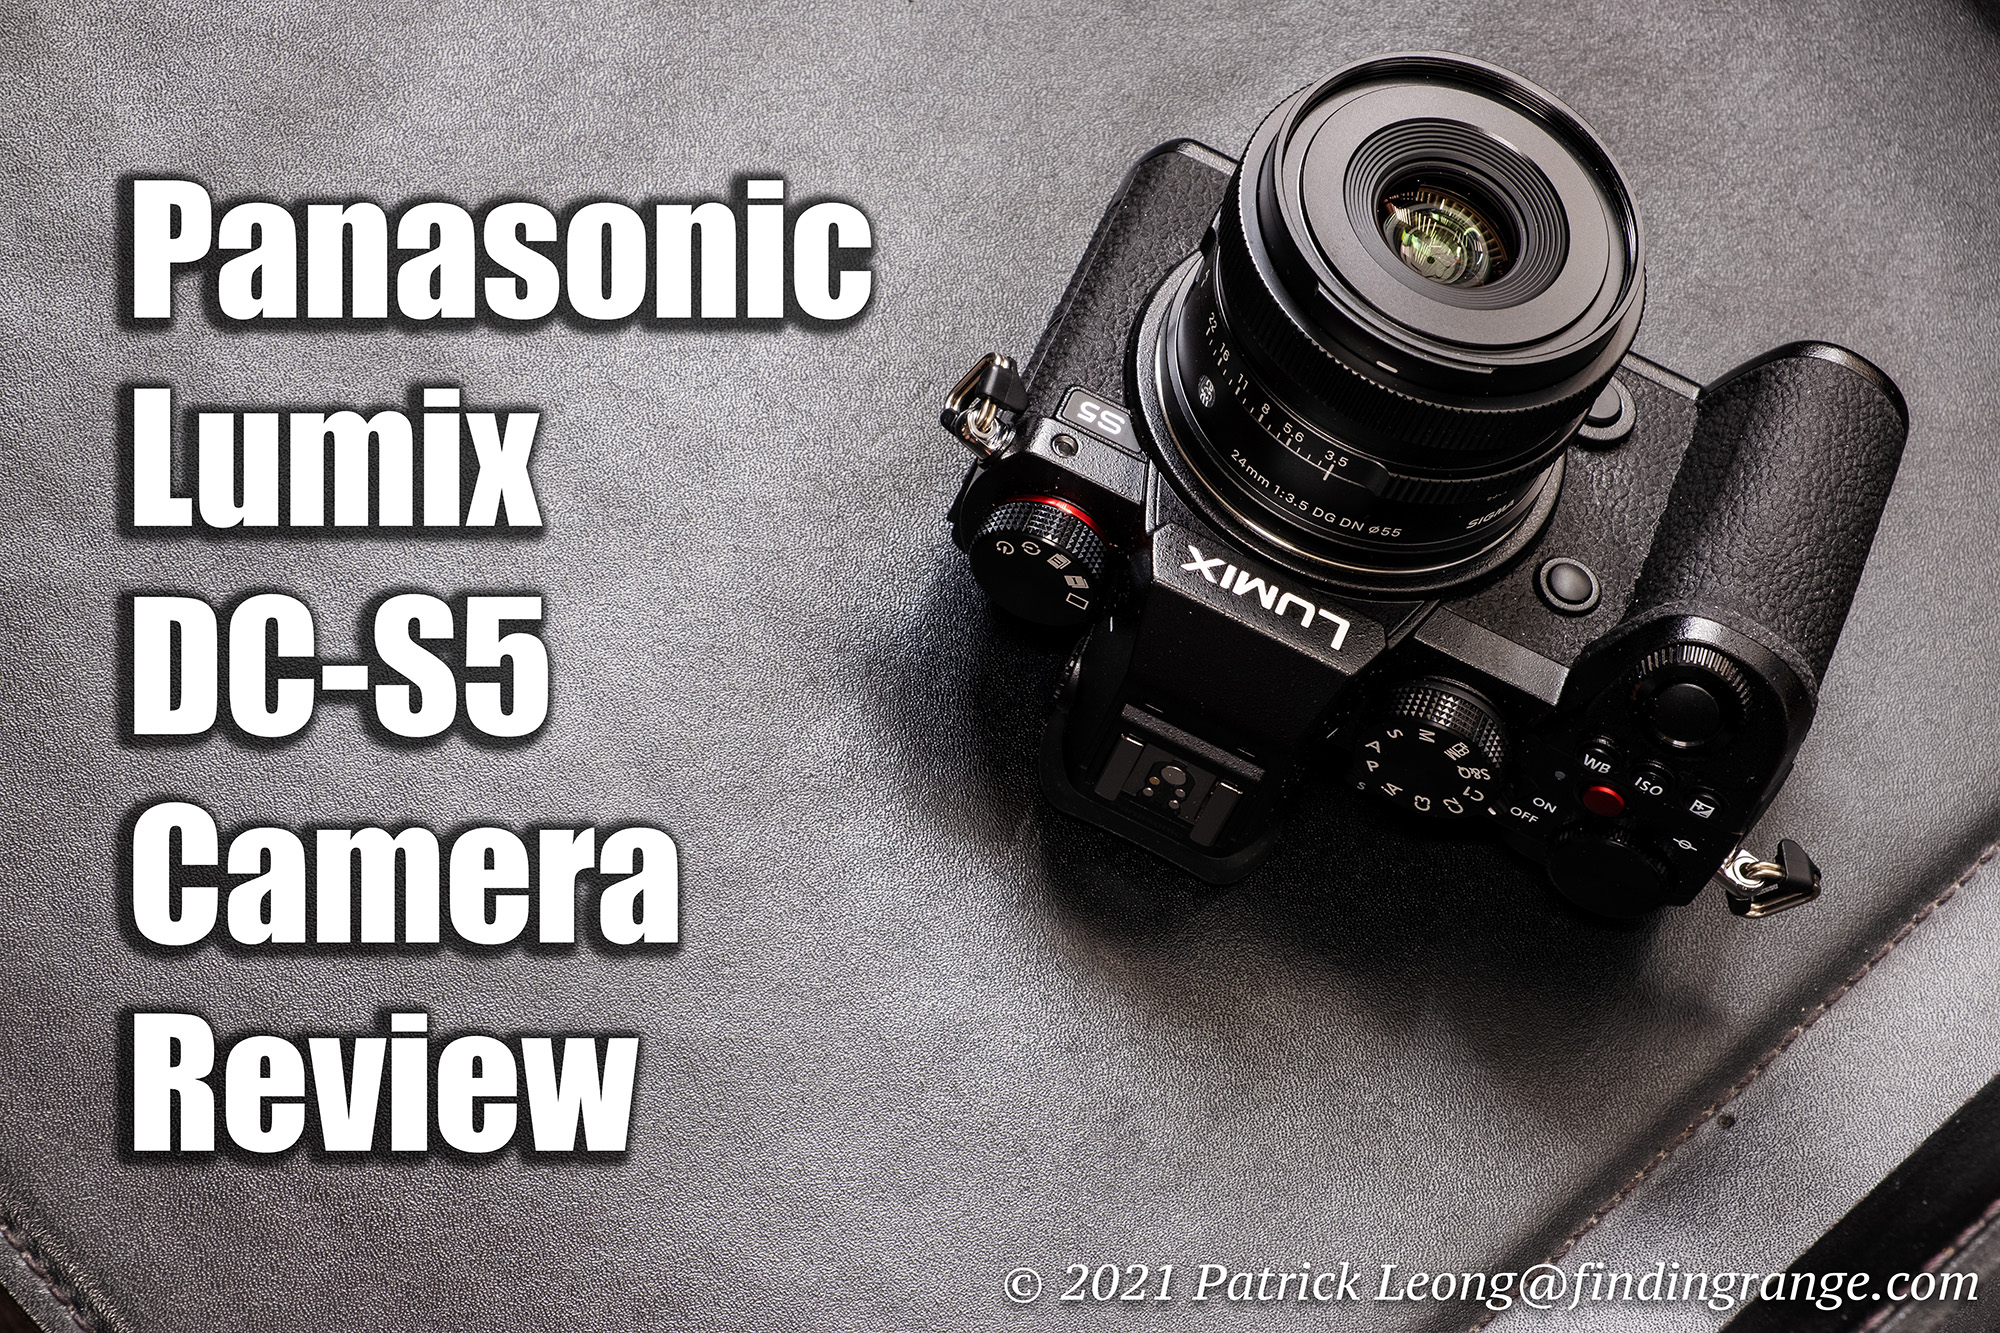 Panasonic Lumix DC-S5 Mirrorless Camera Review - Finding Range